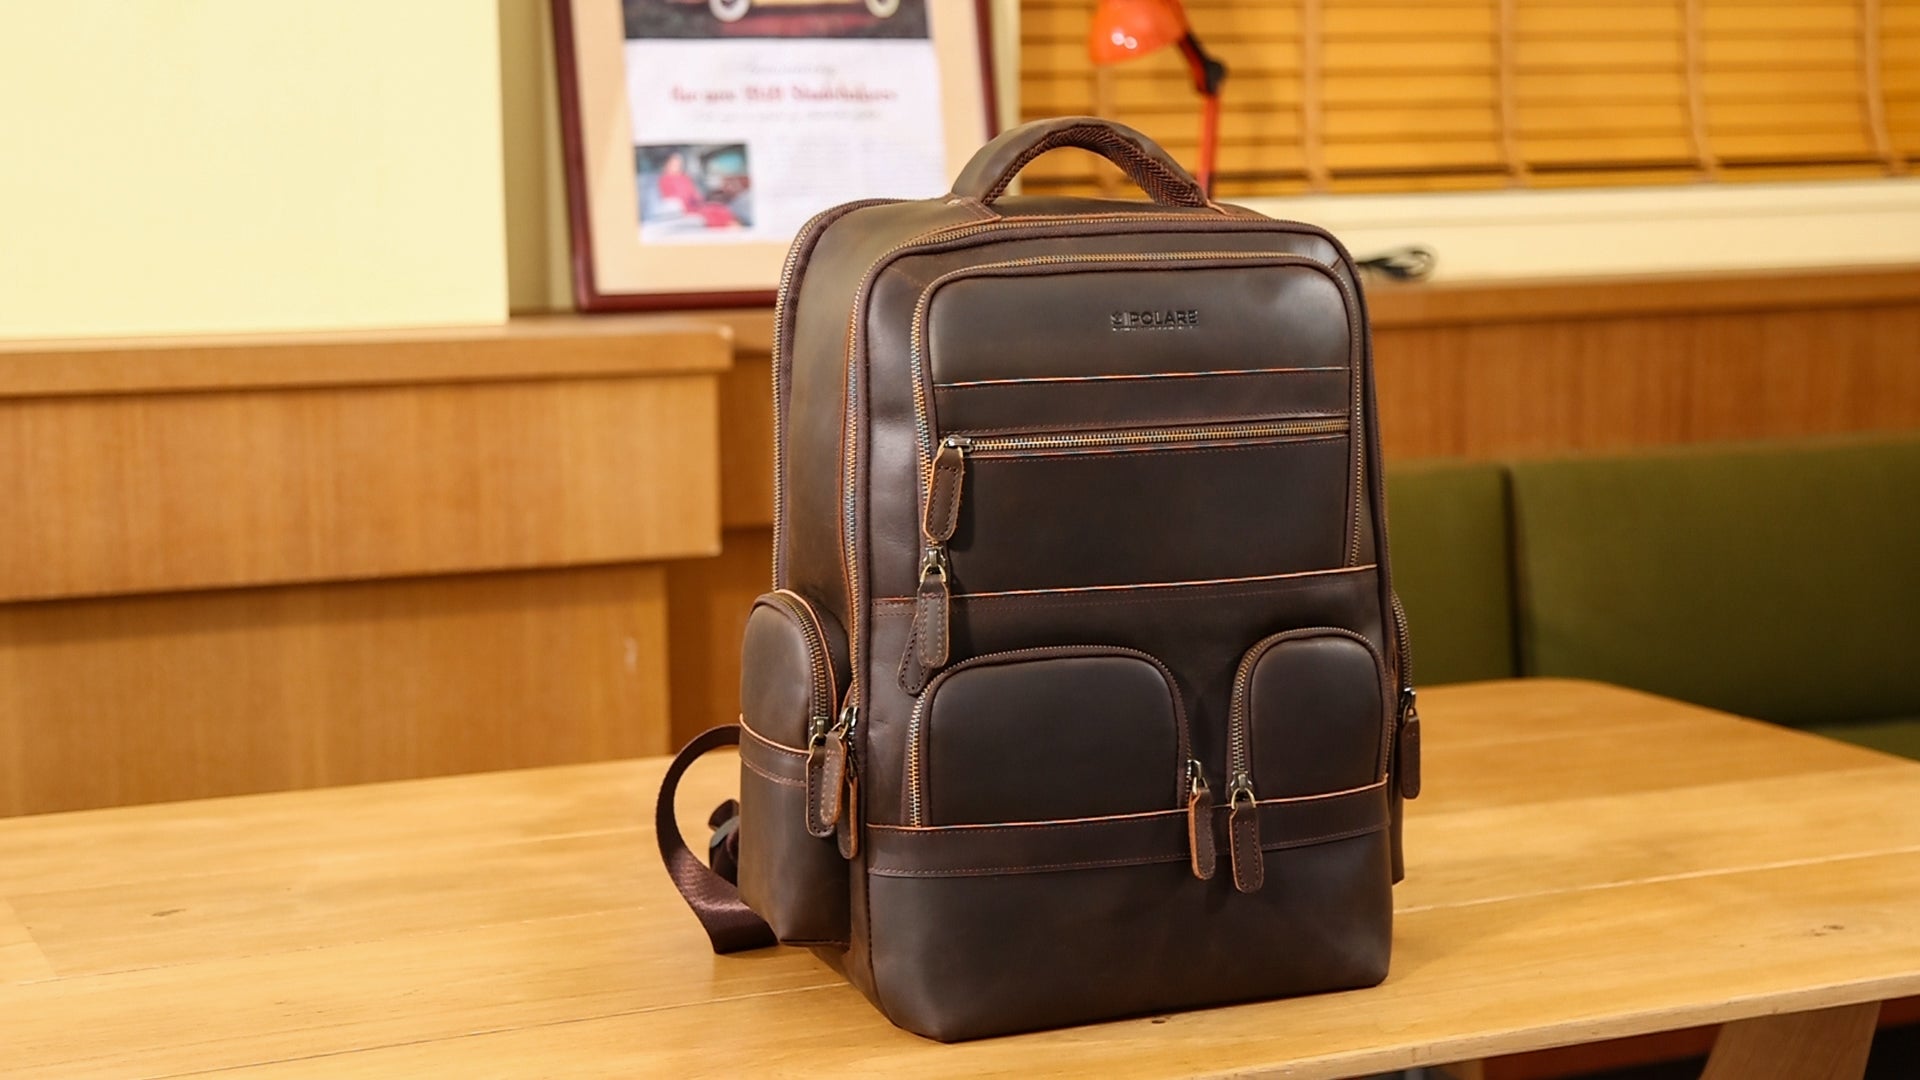 Polare Vintage Full Grain Leather Rucksack Backpack Casual Travel Satchel  Bag Daypack for Men Women